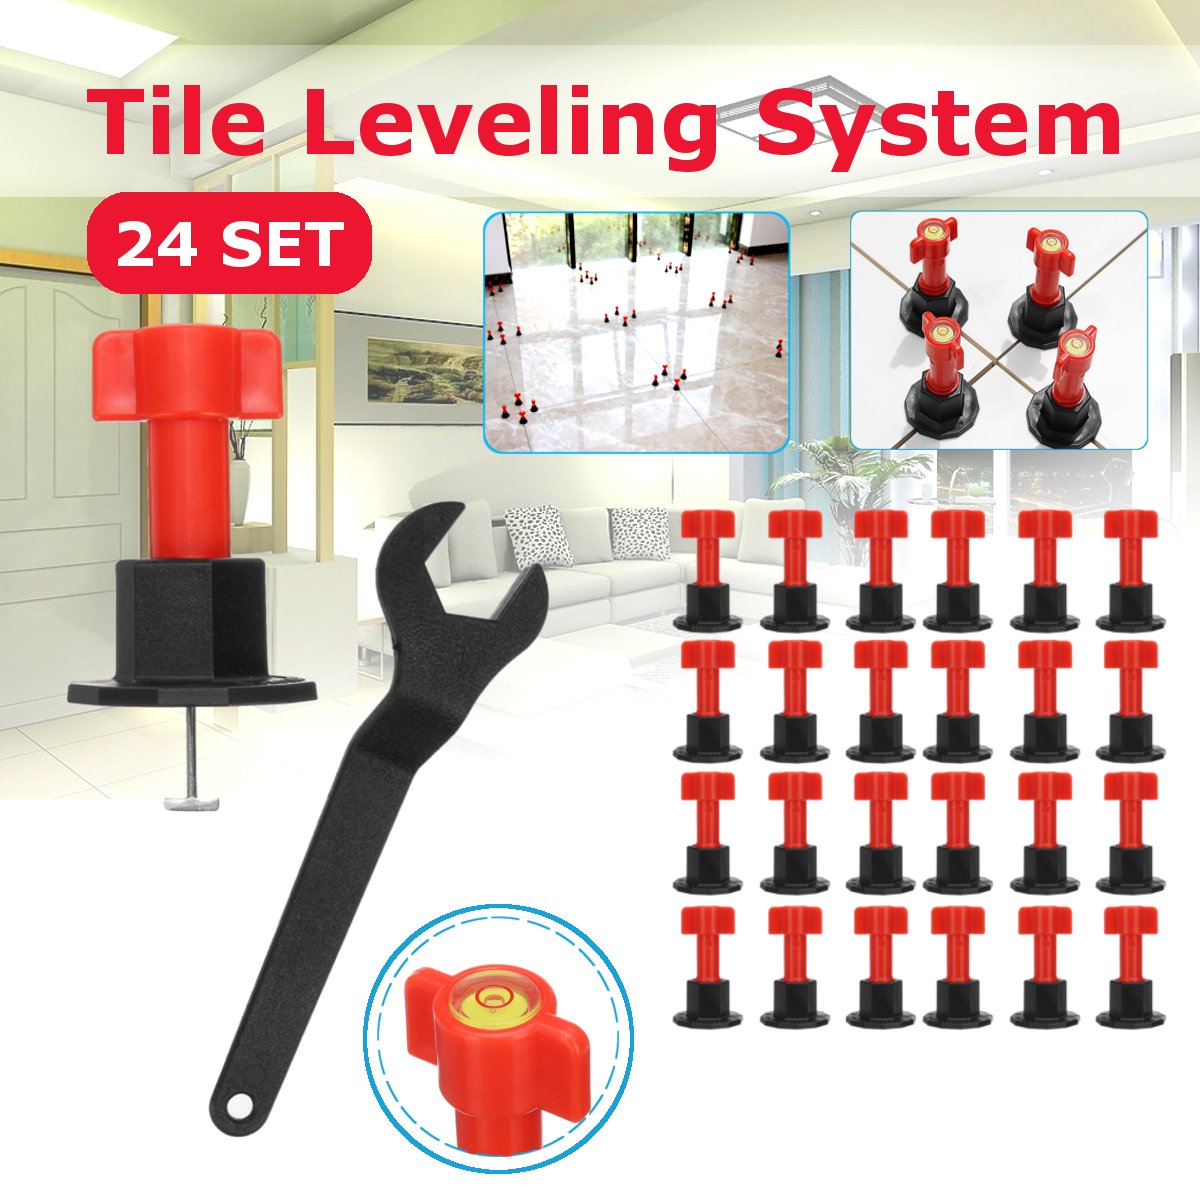 75pcs Premium Tile Leveler Kit